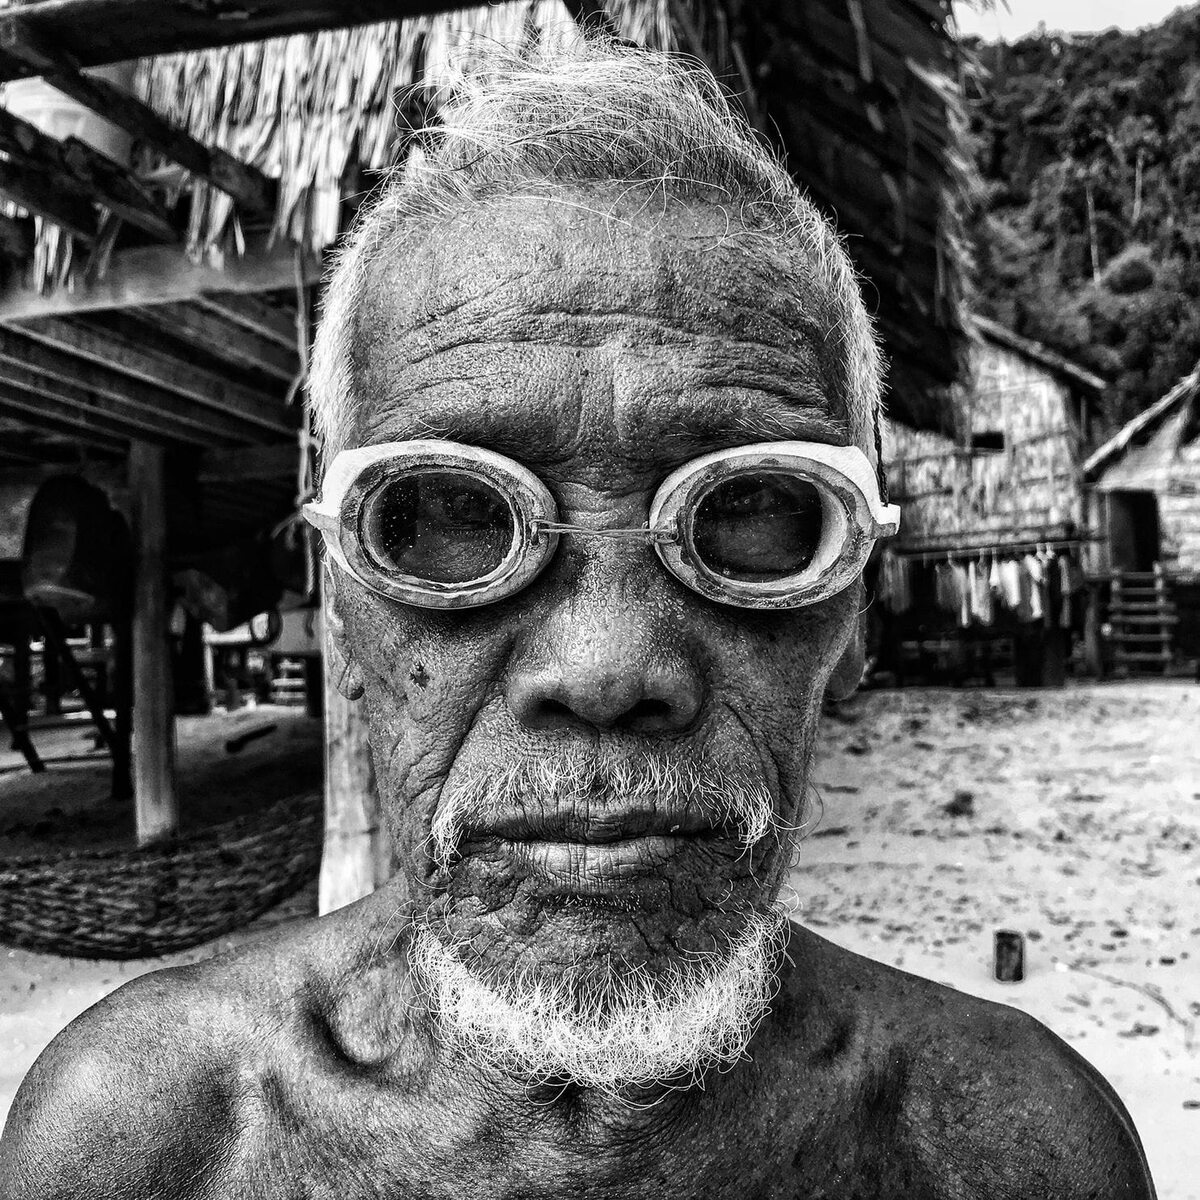 Kategoria „Portret" - JScott Woodward Salamah z wioski Moken, starzec z małej wyspiarskiej społeczności w okolicach Nowej Zelandii we własnoręcznie wykonanych drewnianych googlach do nurkowania.